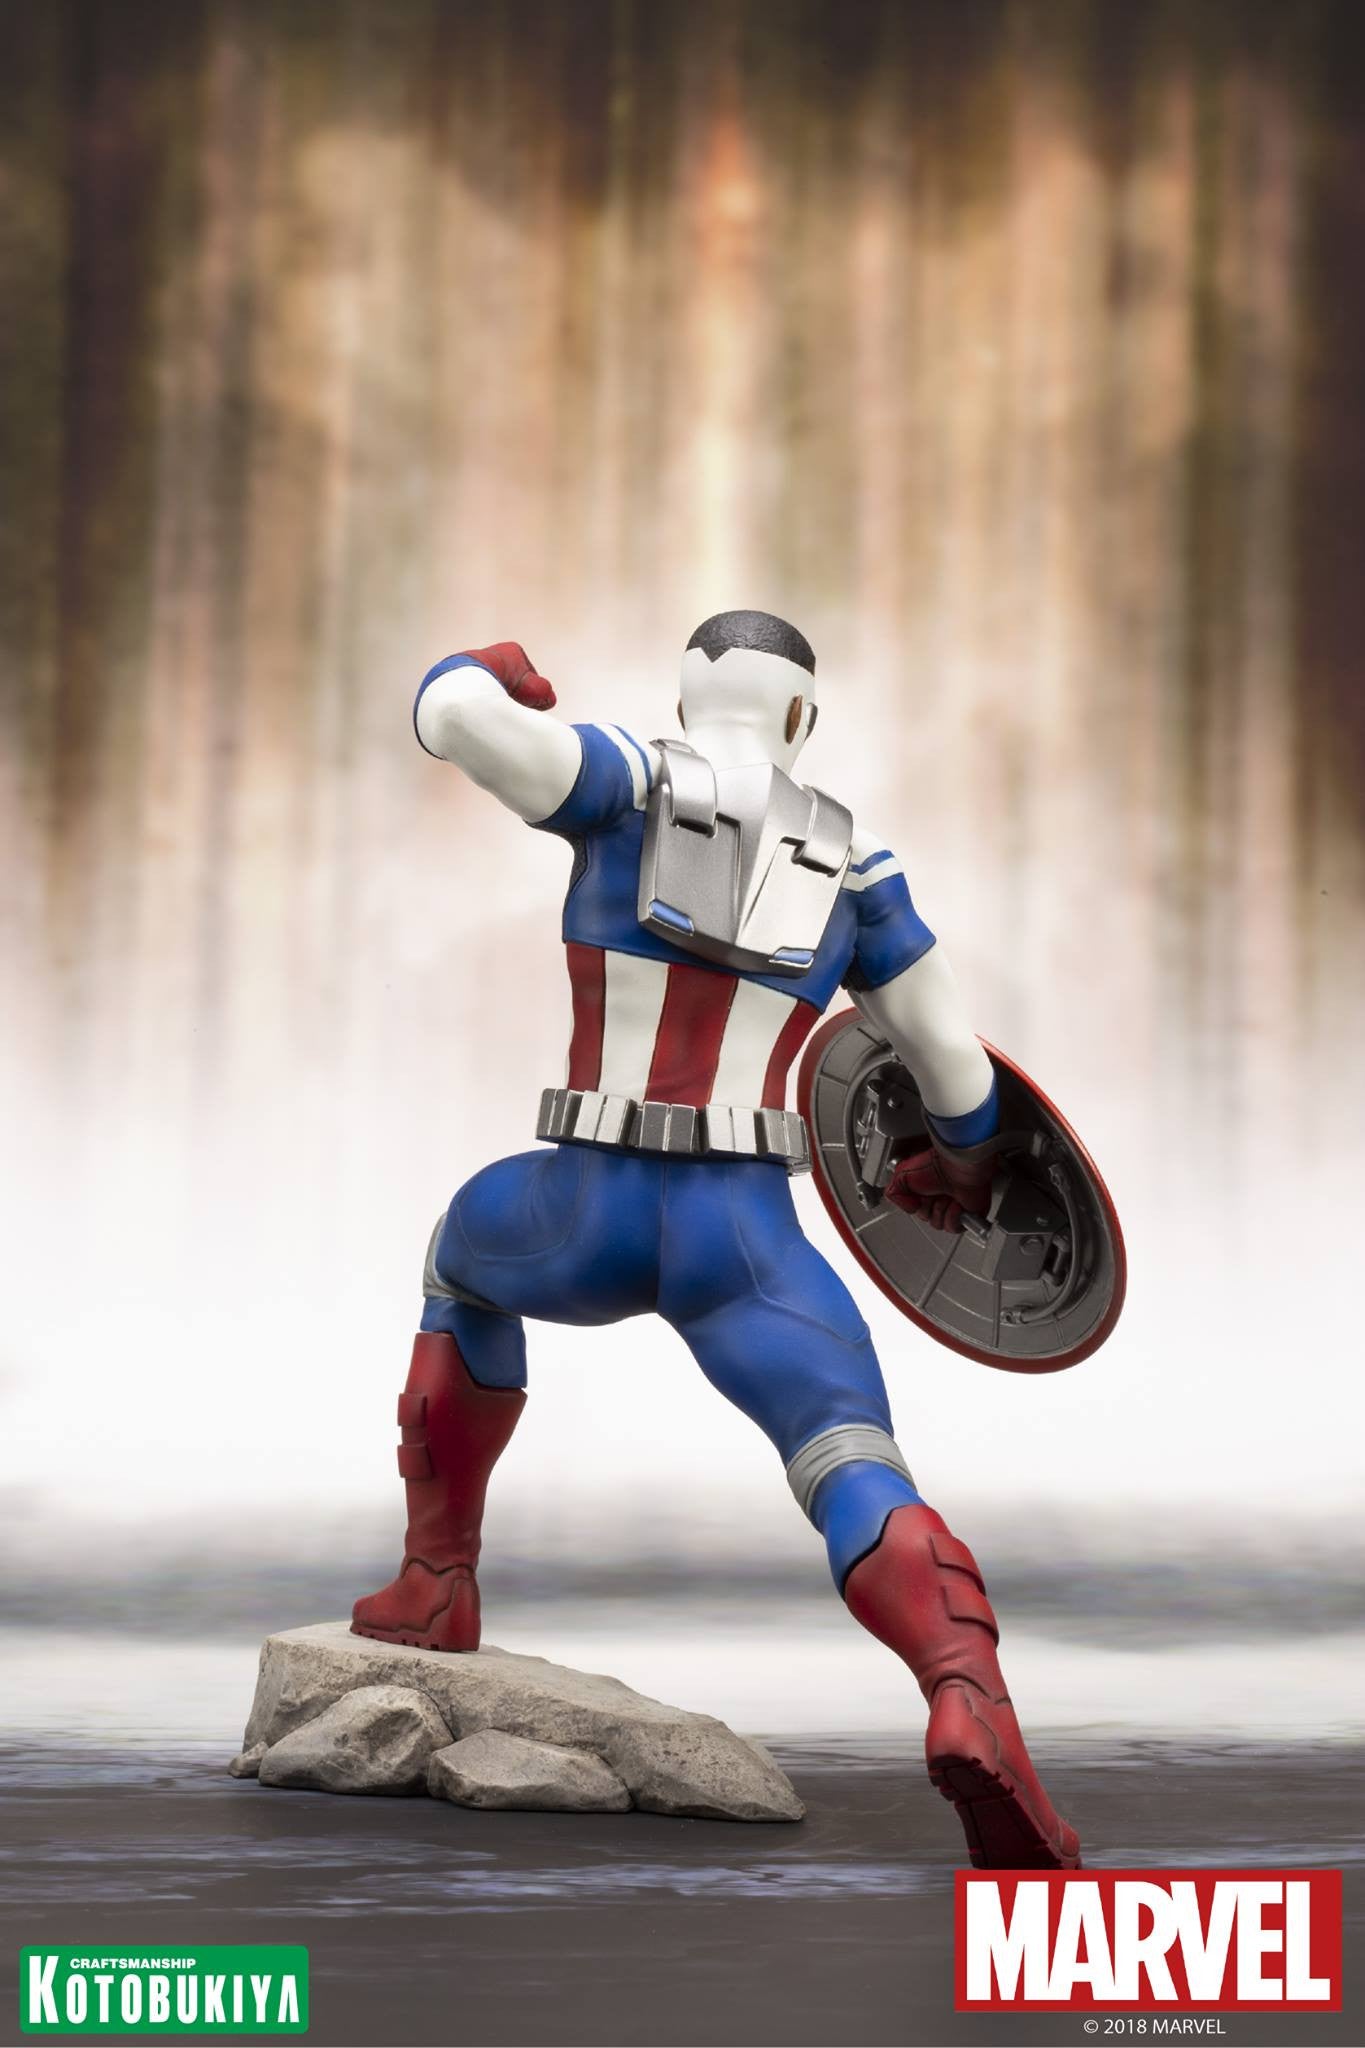 Kotobukiya Marvel Avenger Series ARTFX+ Captain America Sam Wilson